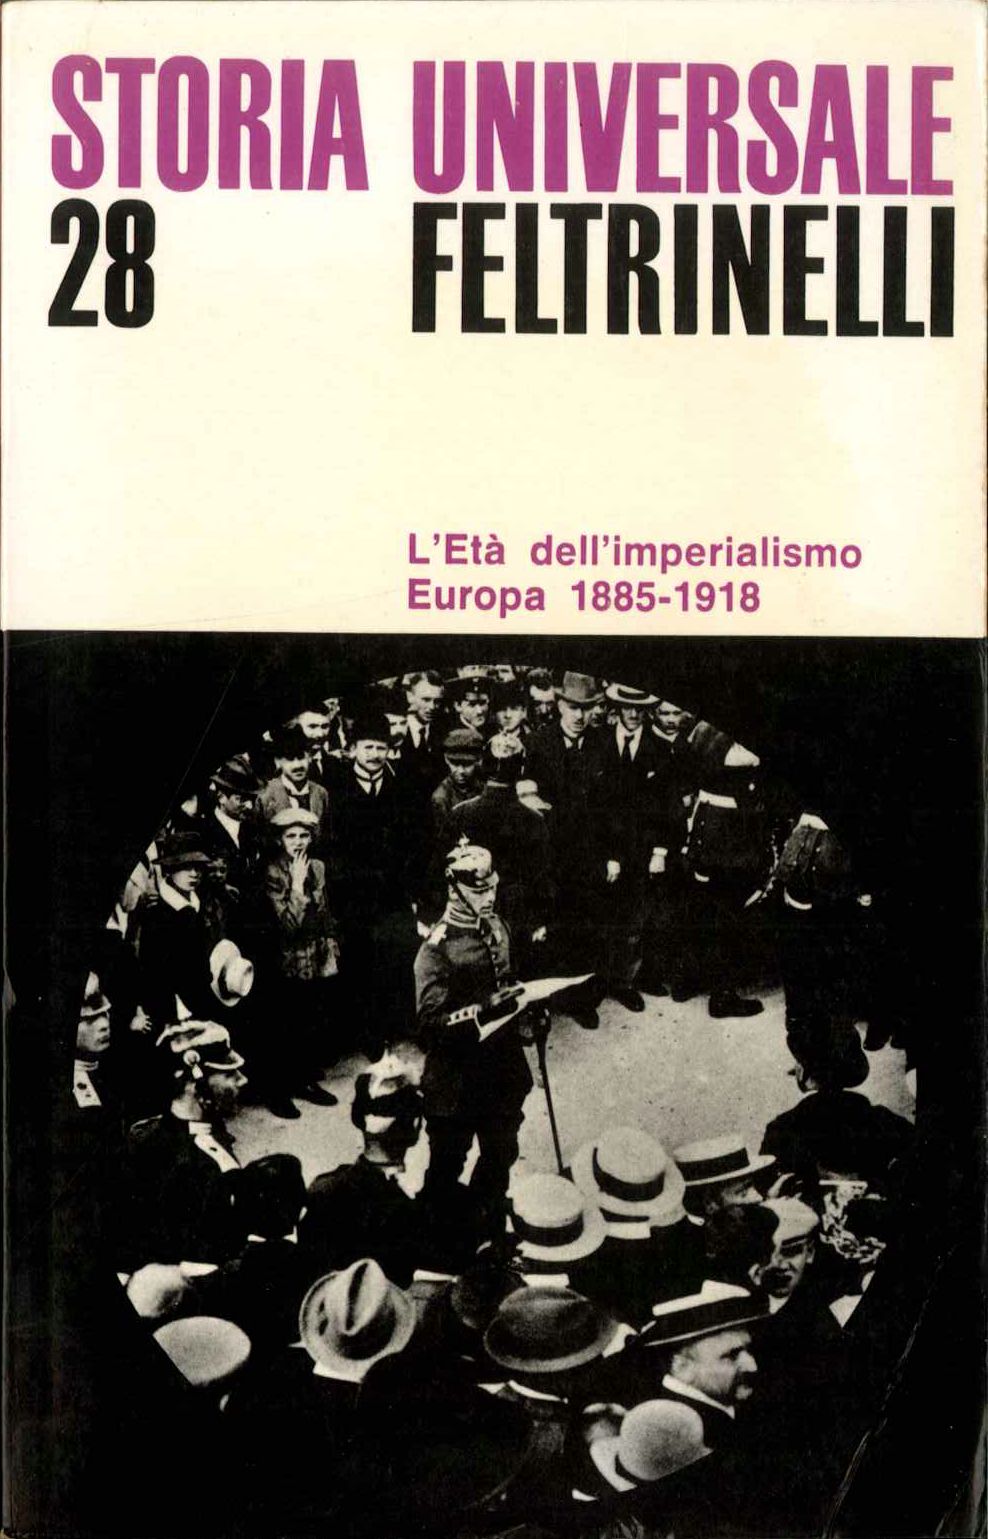 S.U.F. Vol. 28. L'Età dell'imperialismo. Europa. 1885-1918